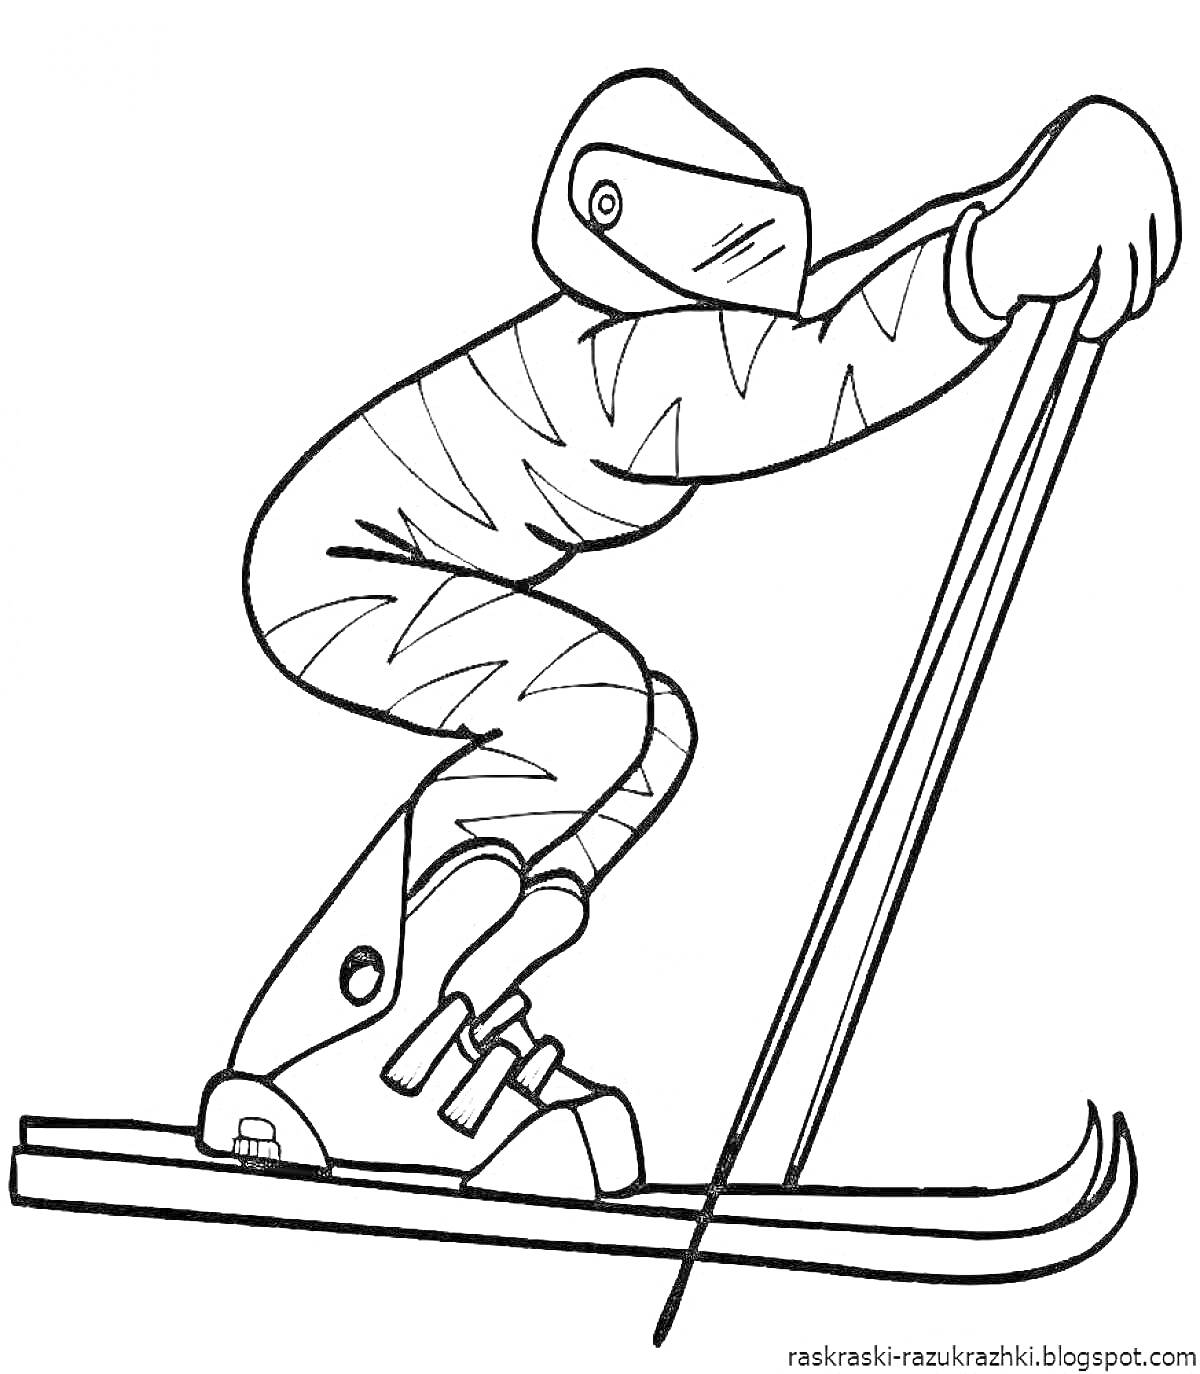 На раскраске изображено: Лыжник, Лыжи, Лыжные палки, Защита, Зимний спорт, Спорт, Активный отдых, Шлемы